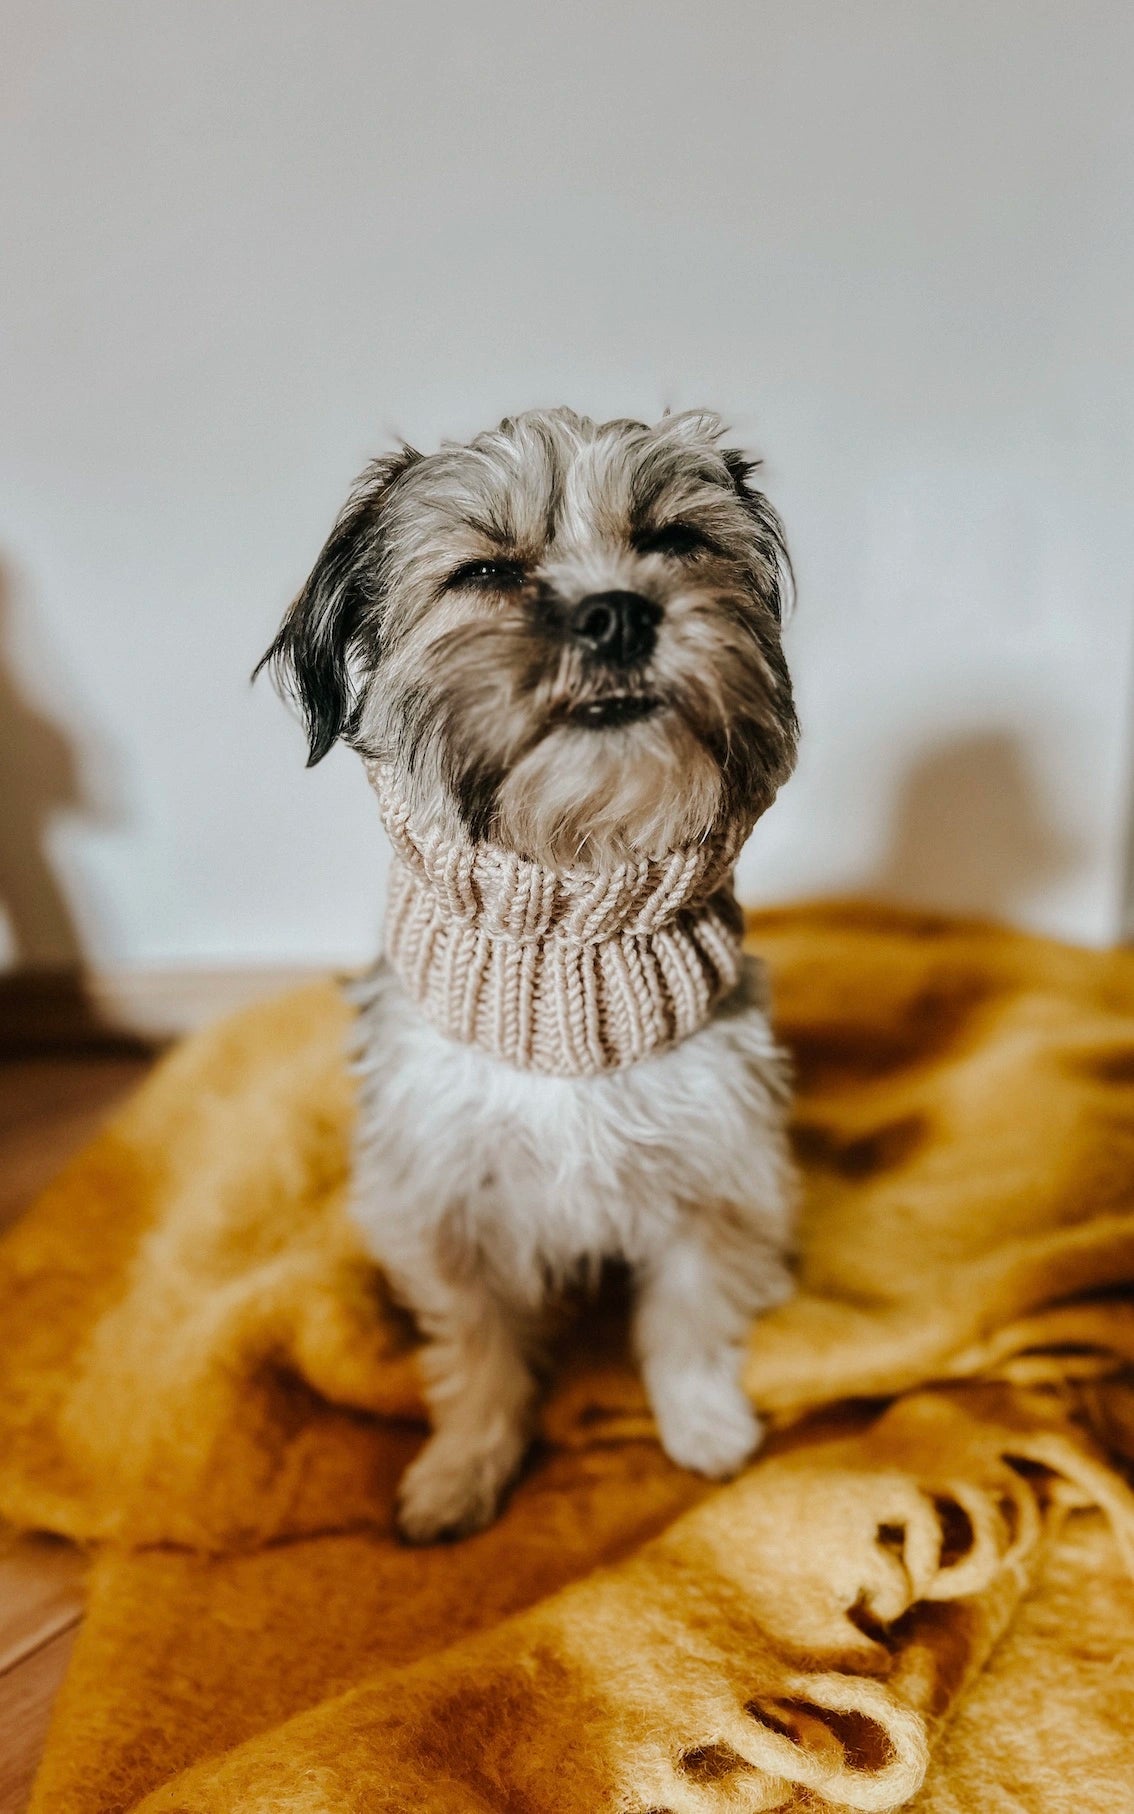 Hunde Loop-Schal - ANLEITUNG von OONIQUE jetzt online kaufen bei OONIQUE